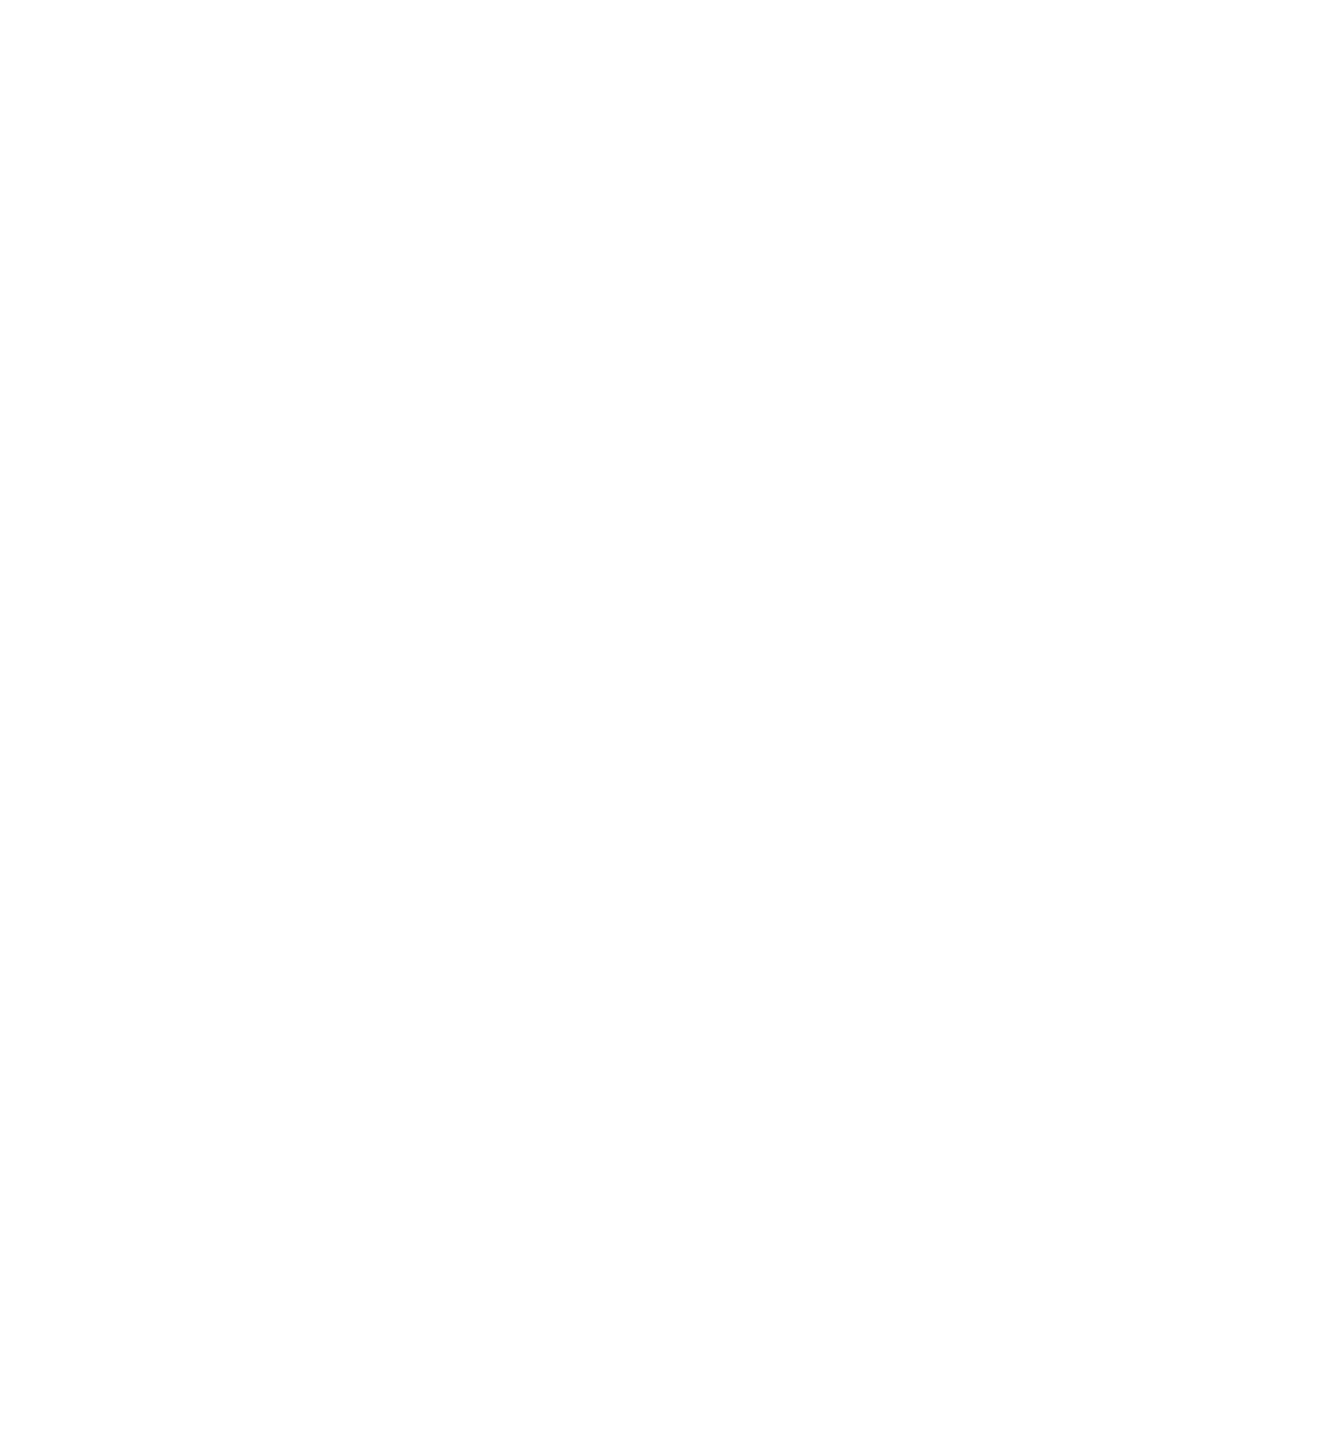 Kinkade Construction